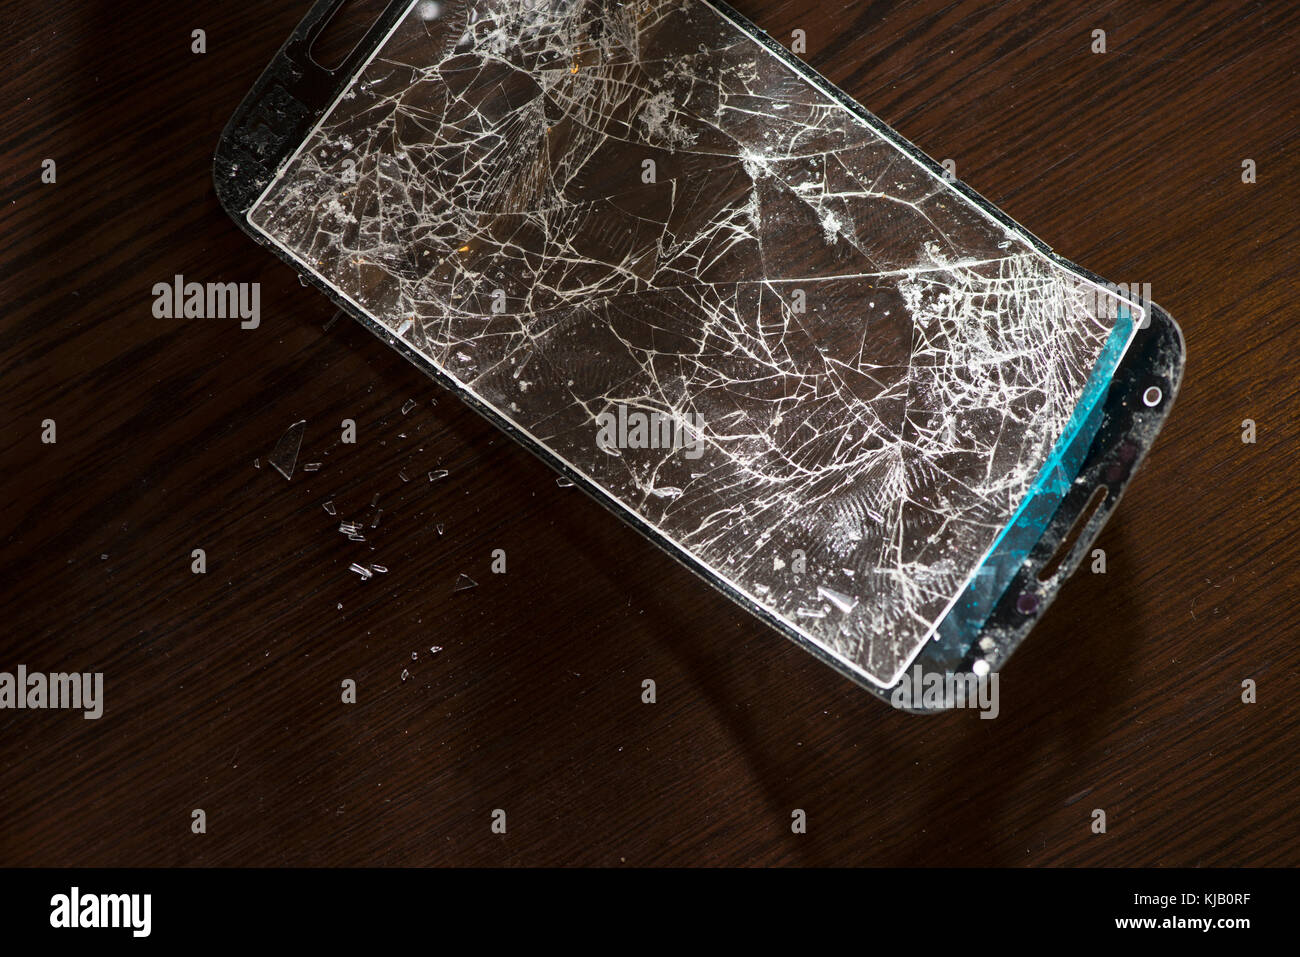 Broken screen for smartphone. Cracked phone screen Stock Photo